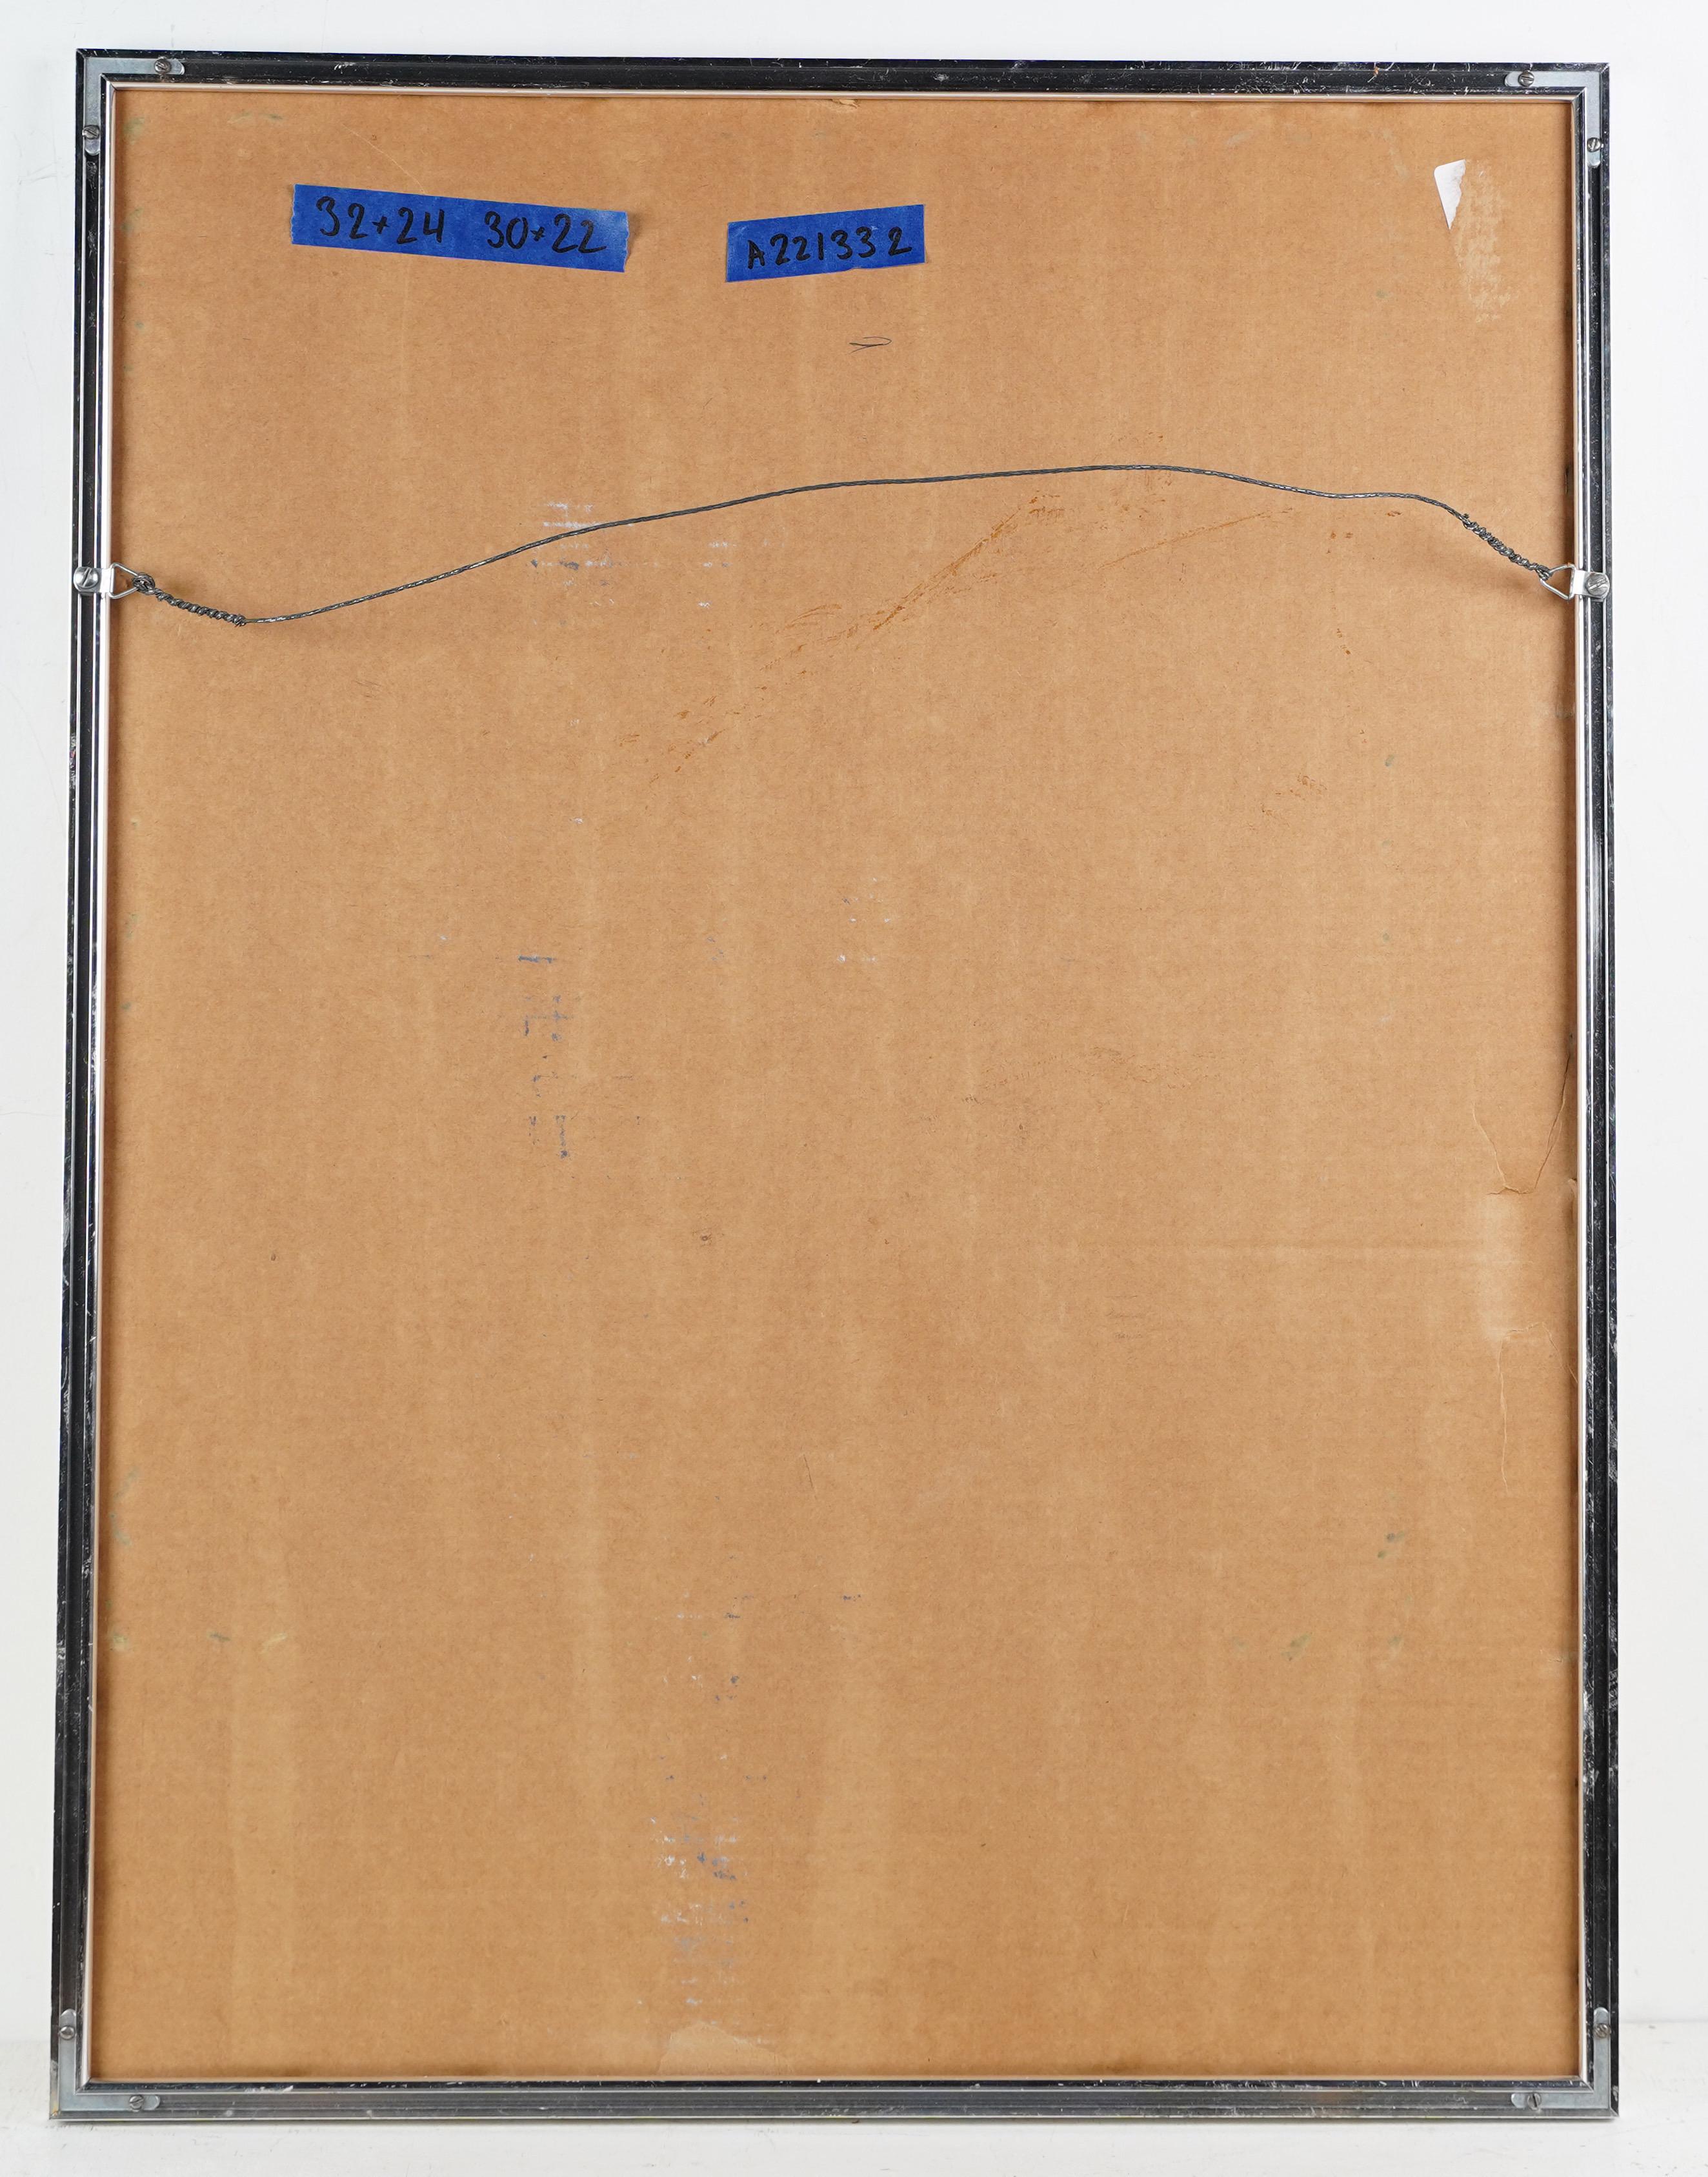 Antique peinture américaine abstraite minimaliste. Huile et gouache sur papier, vers 1950. Logé dans un cadre d'époque. Taille de l'image, 22L x 30H.